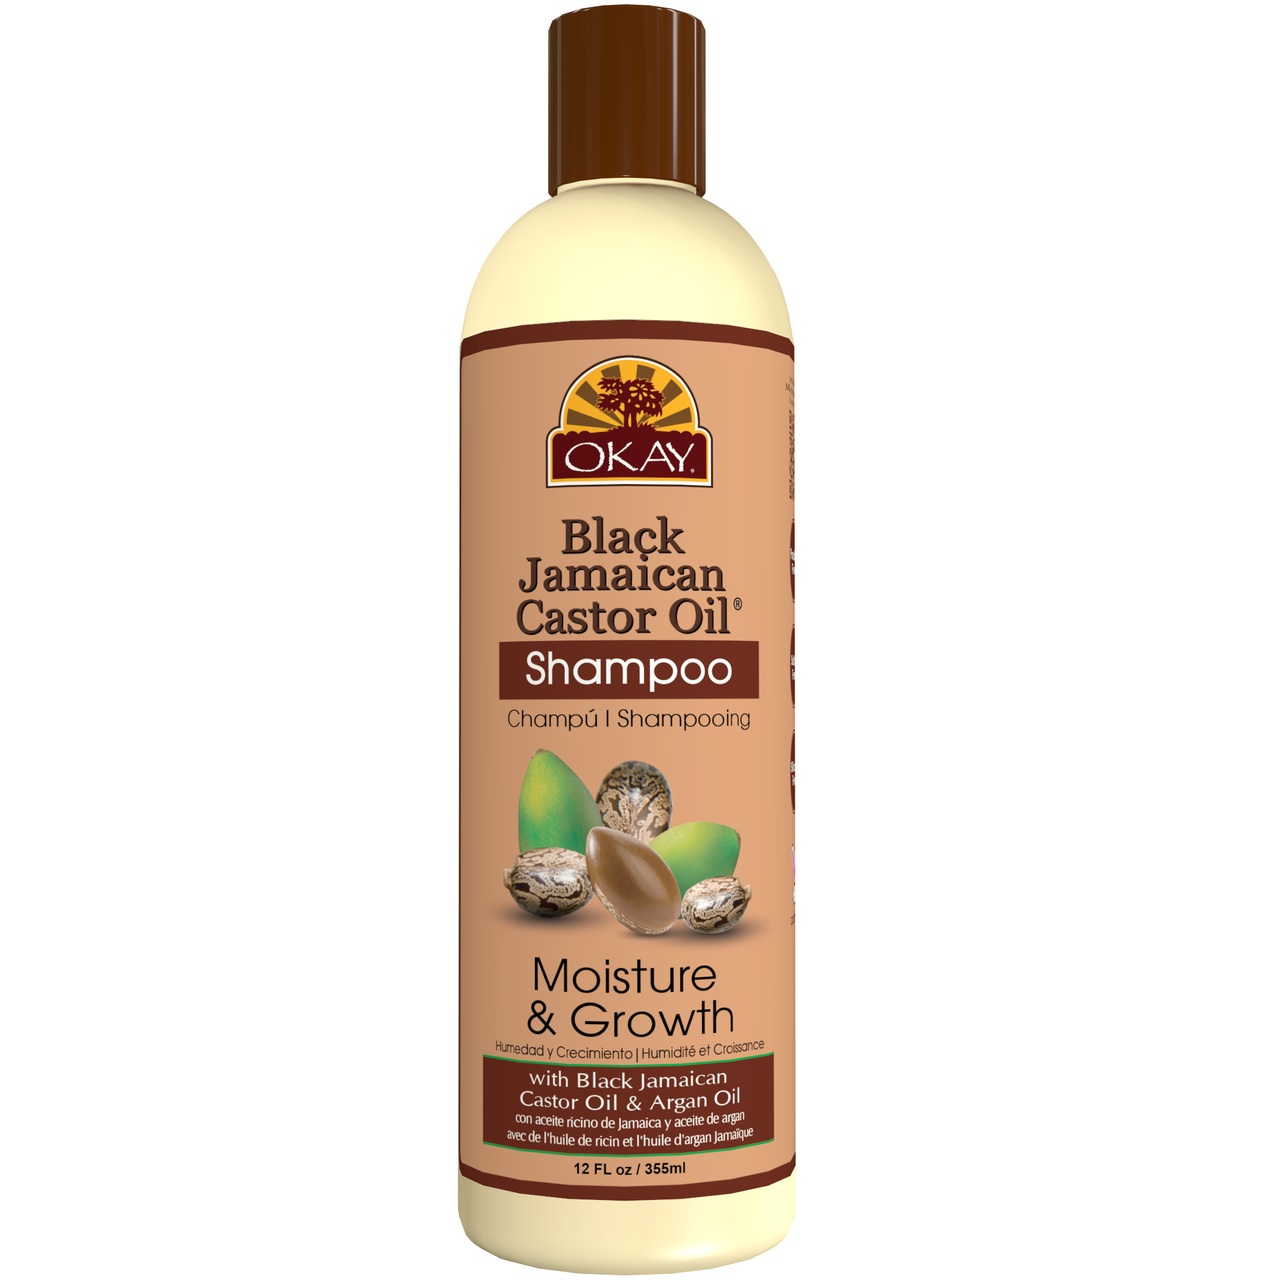 Okay Black Jamaican Castor Oil Moisture Growth Shampoo Helps Moisturize Regrow Strong Healthy Hair